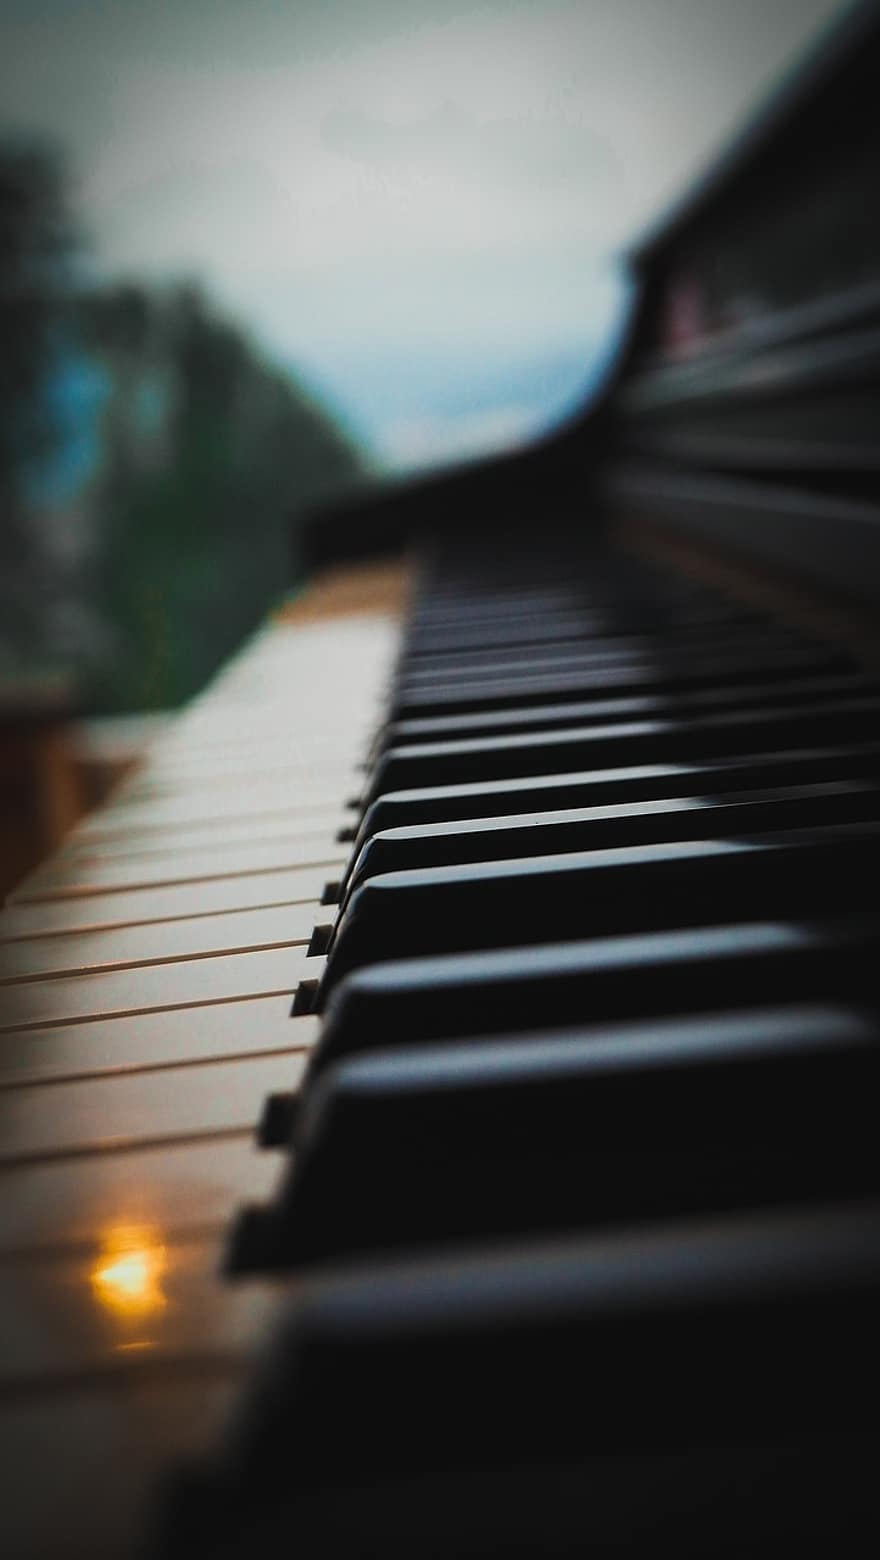 بيانو ، طبيعة ، قريب ، موسيقى ، آلة موسيقية ، مفتاح البيانو ، موسيقي او عازف ، تعلم ، ممارسة ، مفتاح ، وتر